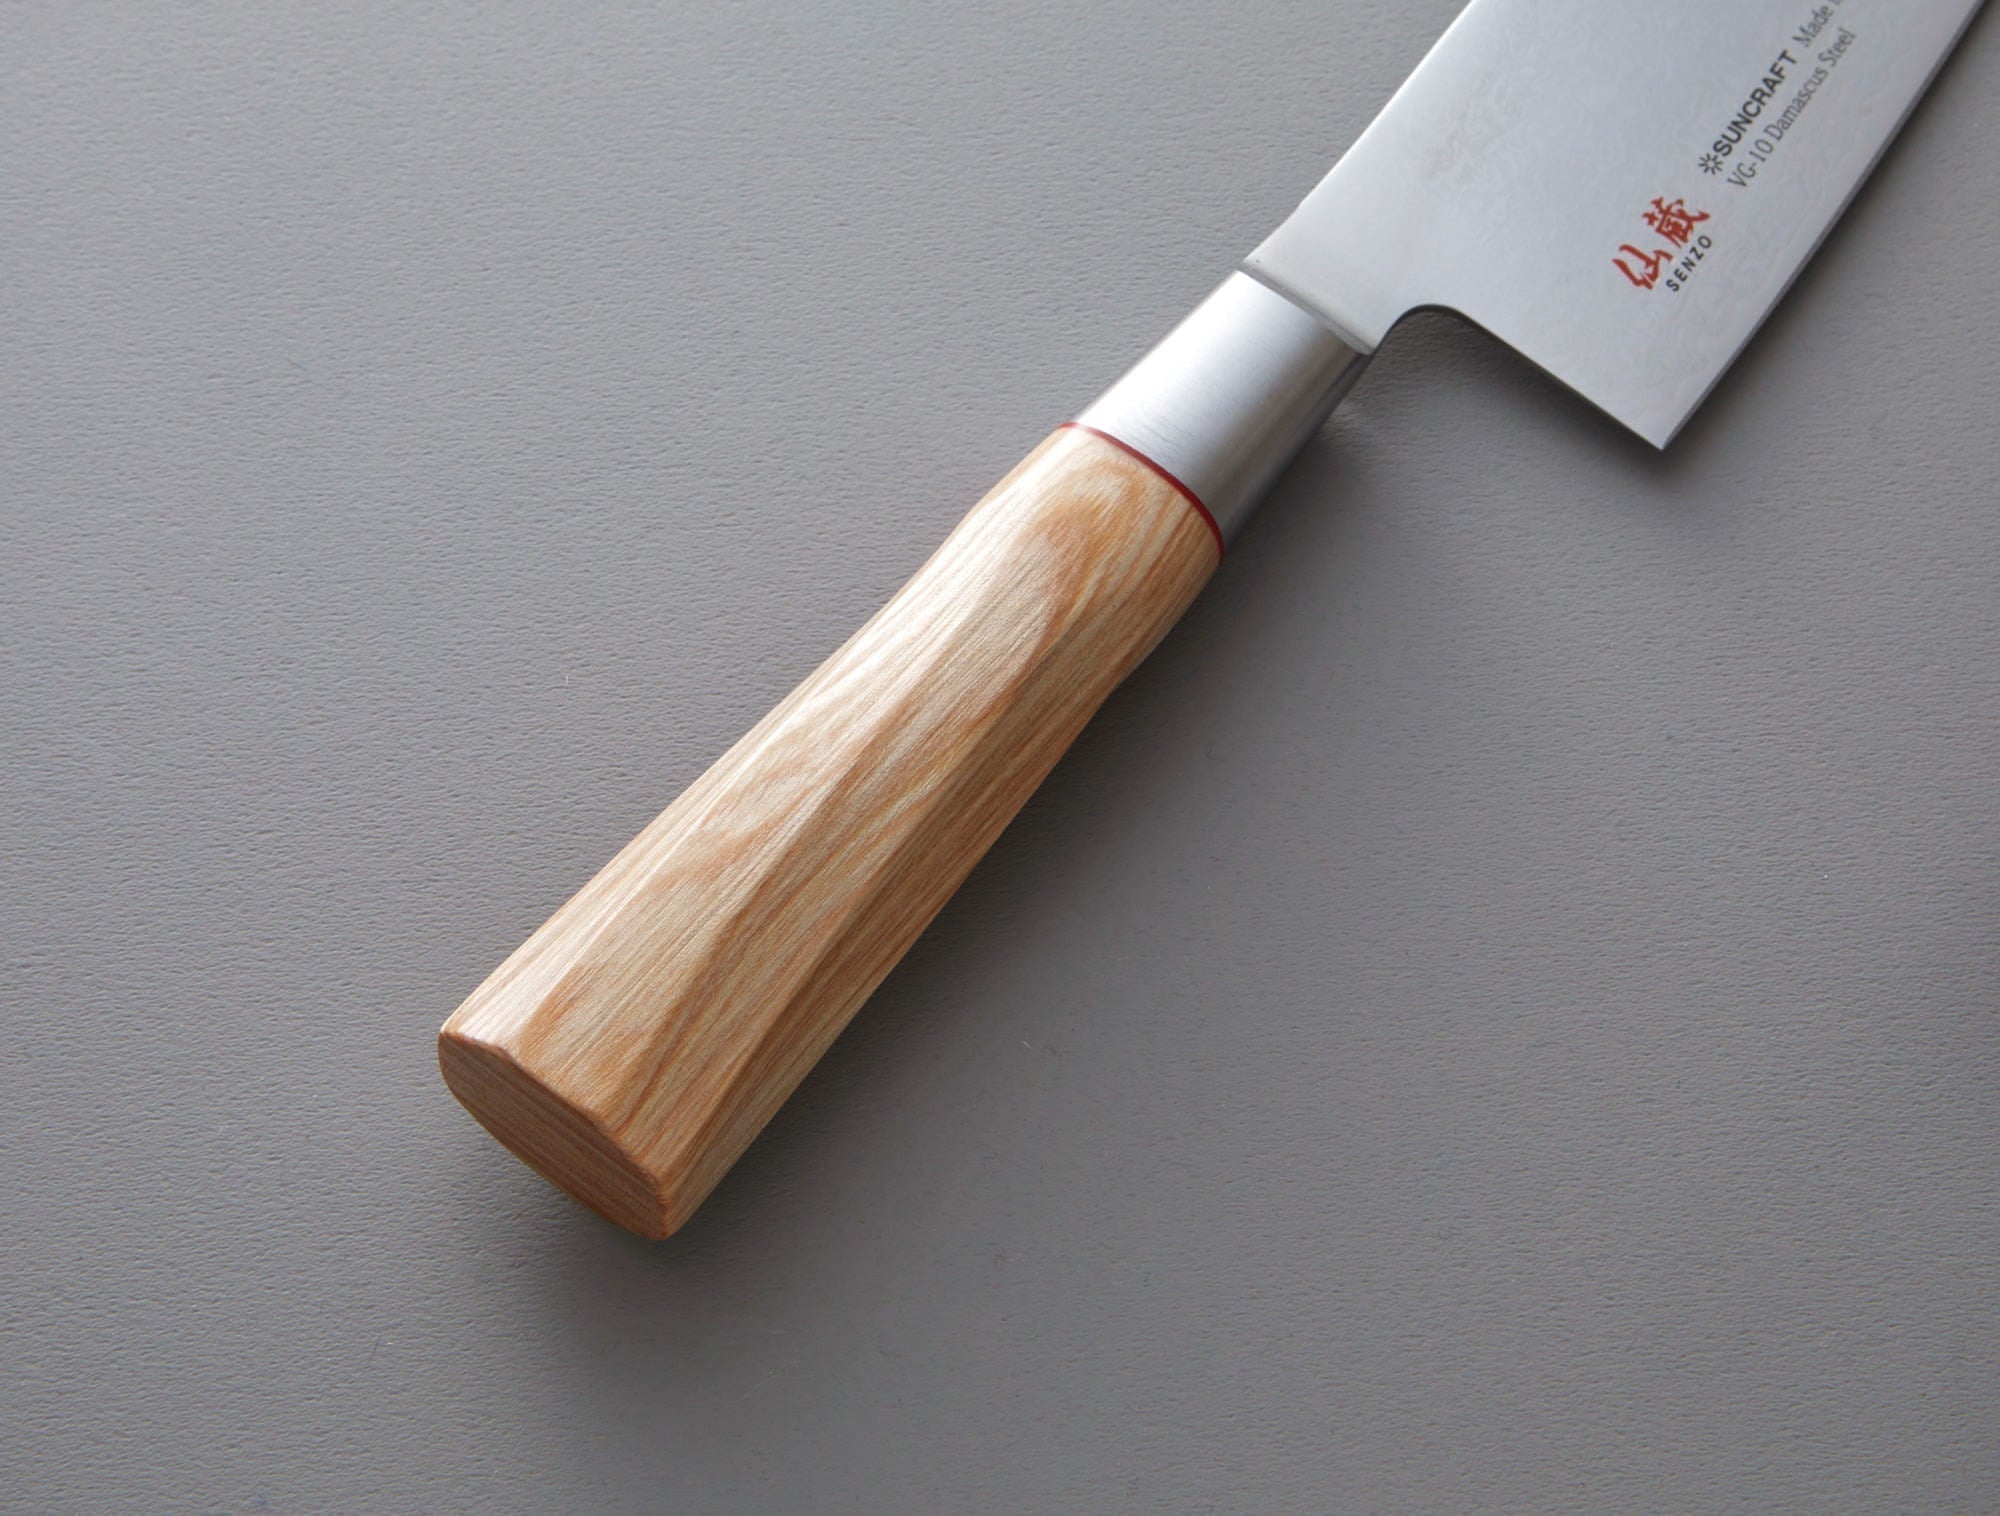 Senzo til 05 Cook Knife, 20 cm